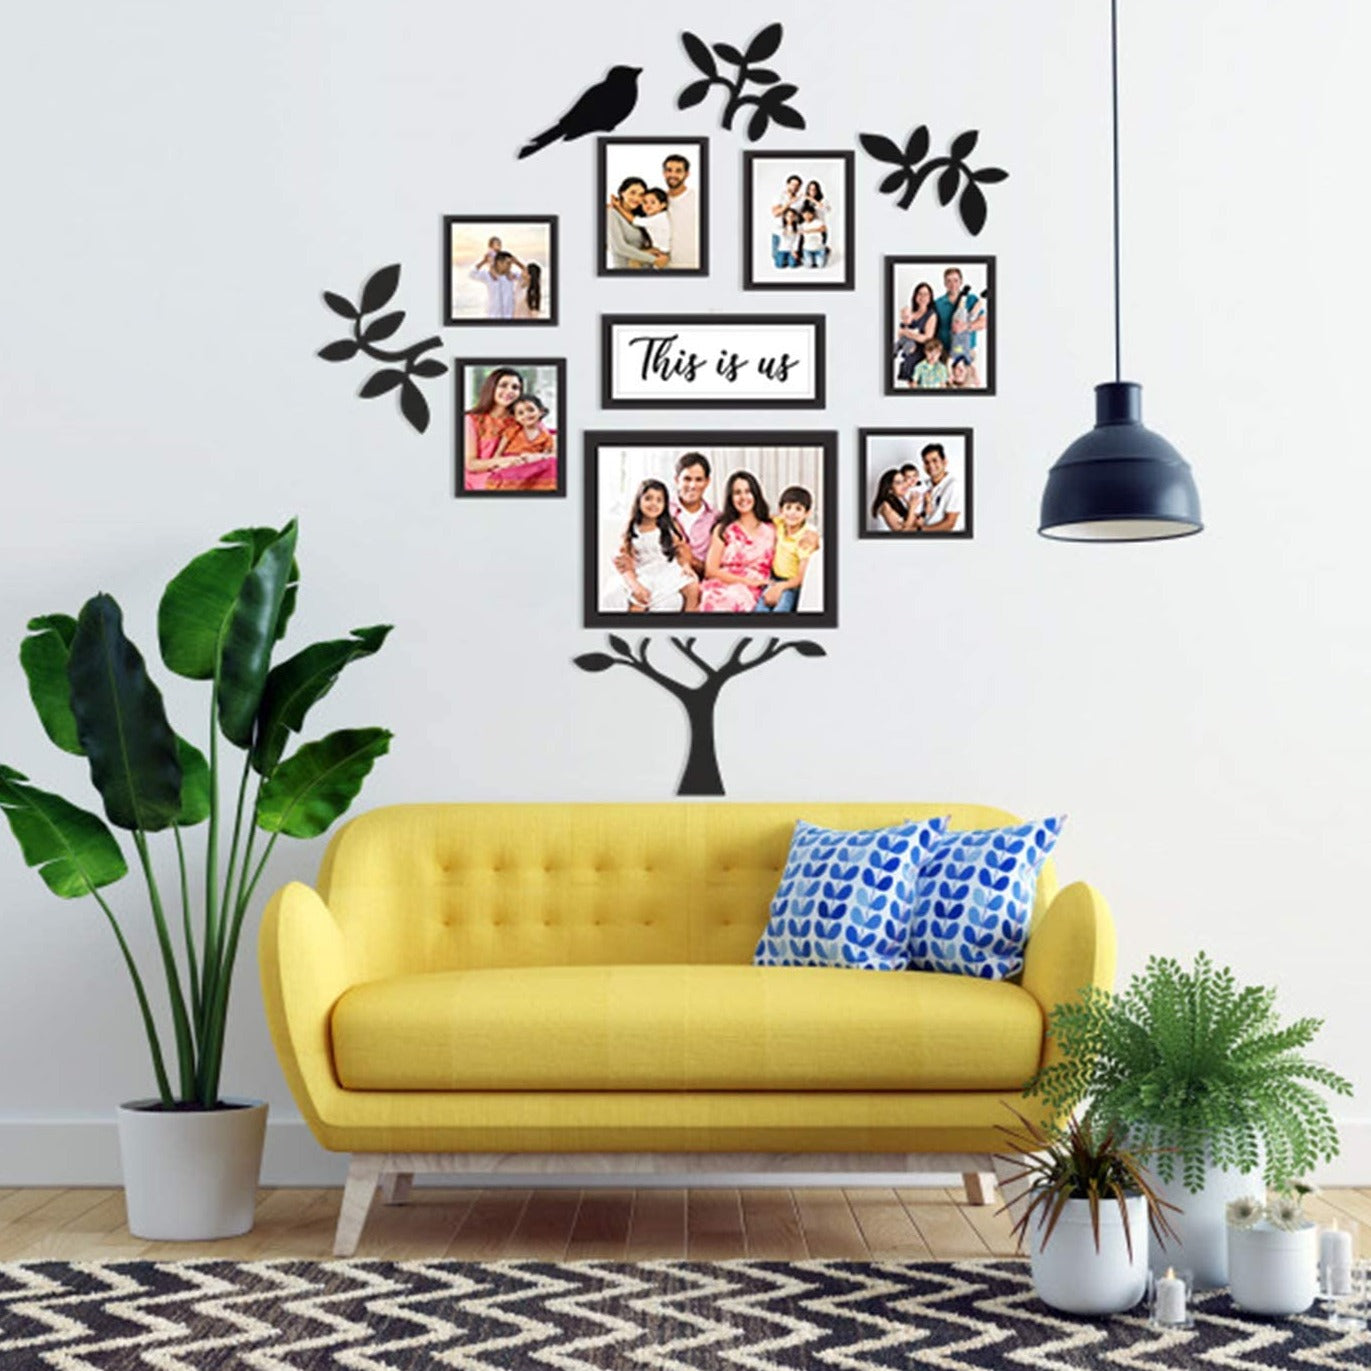 Tree of Family - Frame Set